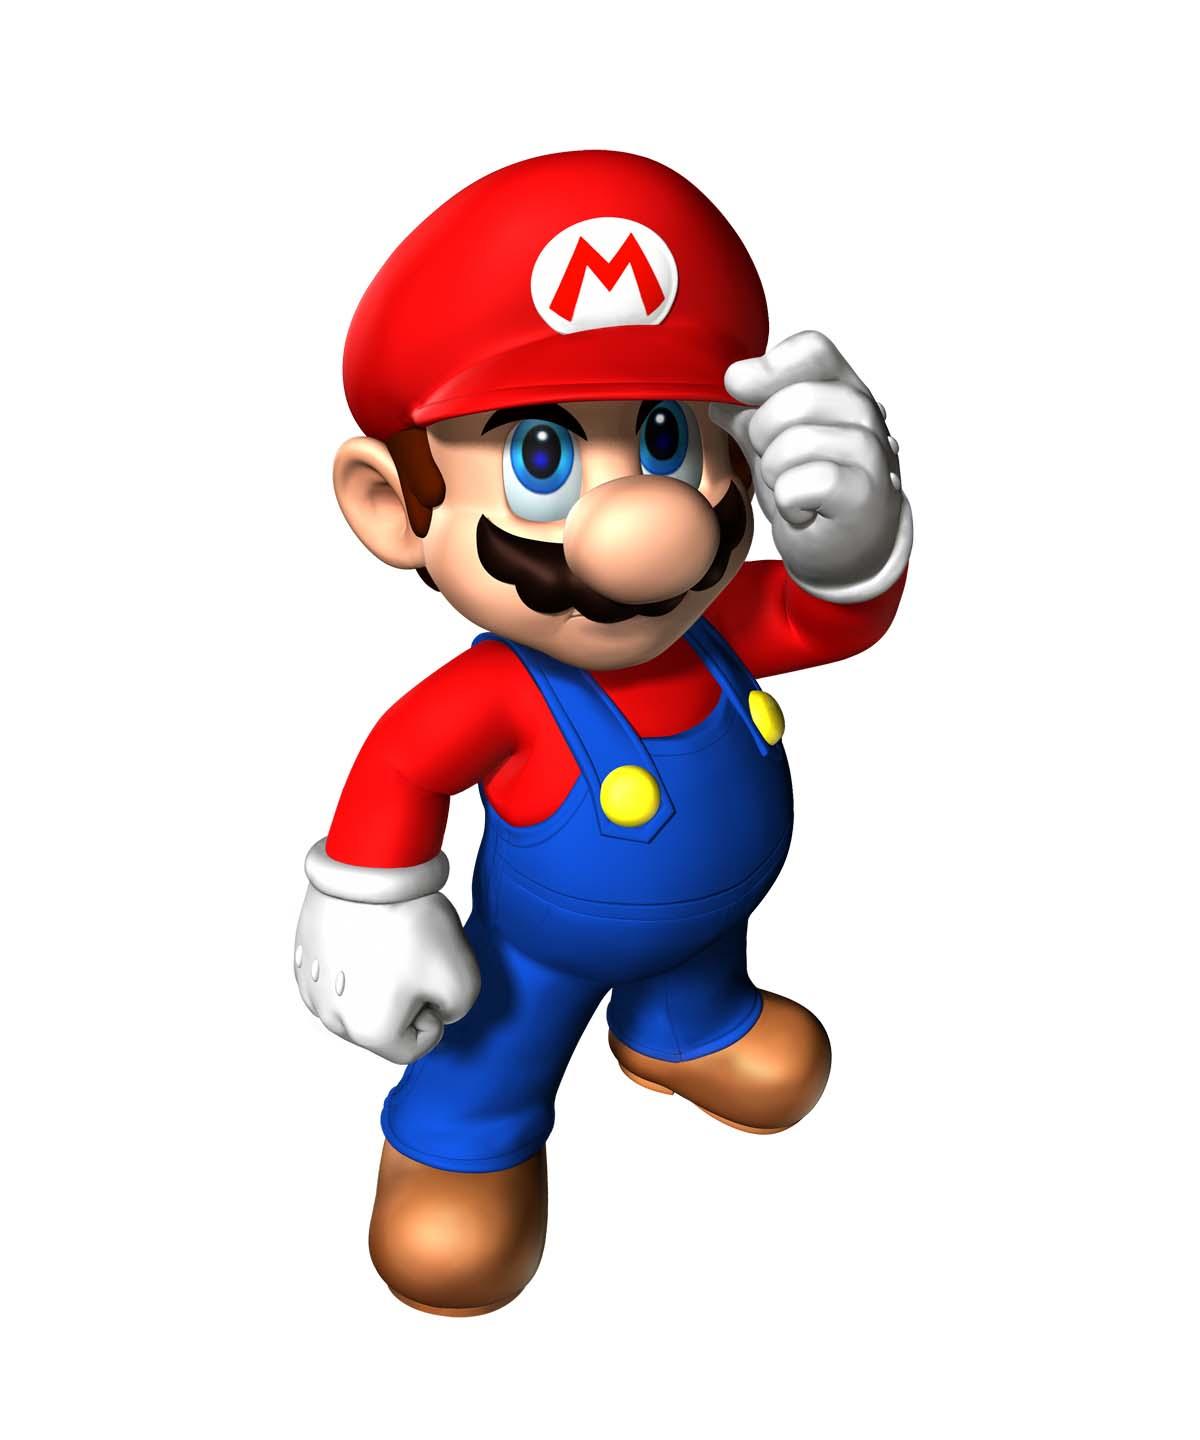 Blir nästa stora Mario-spel Android-baserat?